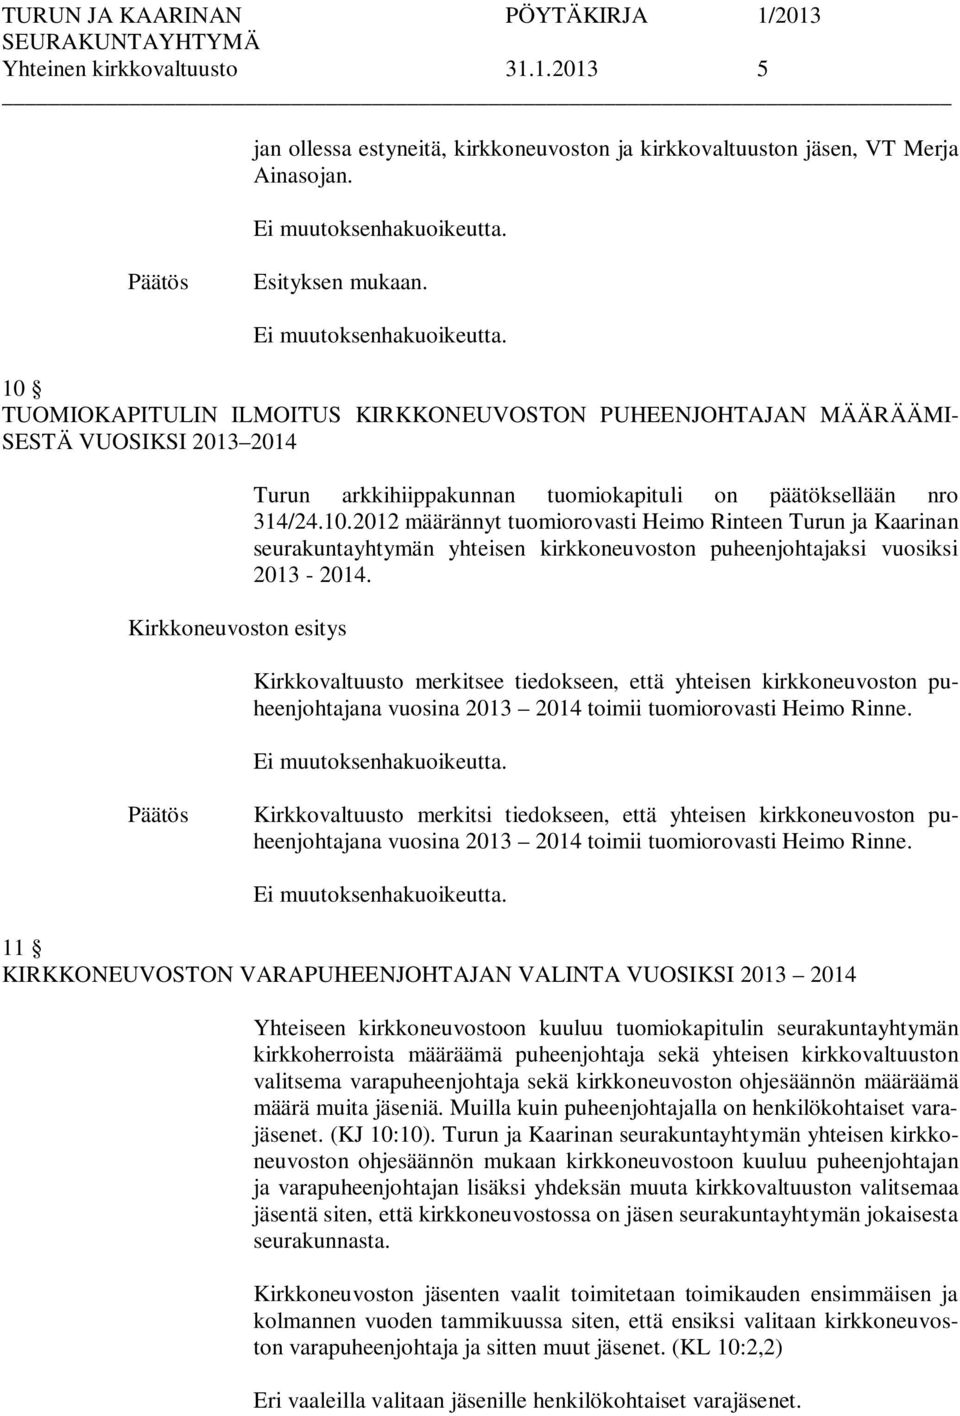 Kirkkovaltuusto merkitsee tiedokseen, että yhteisen kirkkoneuvoston puheenjohtajana vuosina 2013 2014 toimii tuomiorovasti Heimo Rinne.